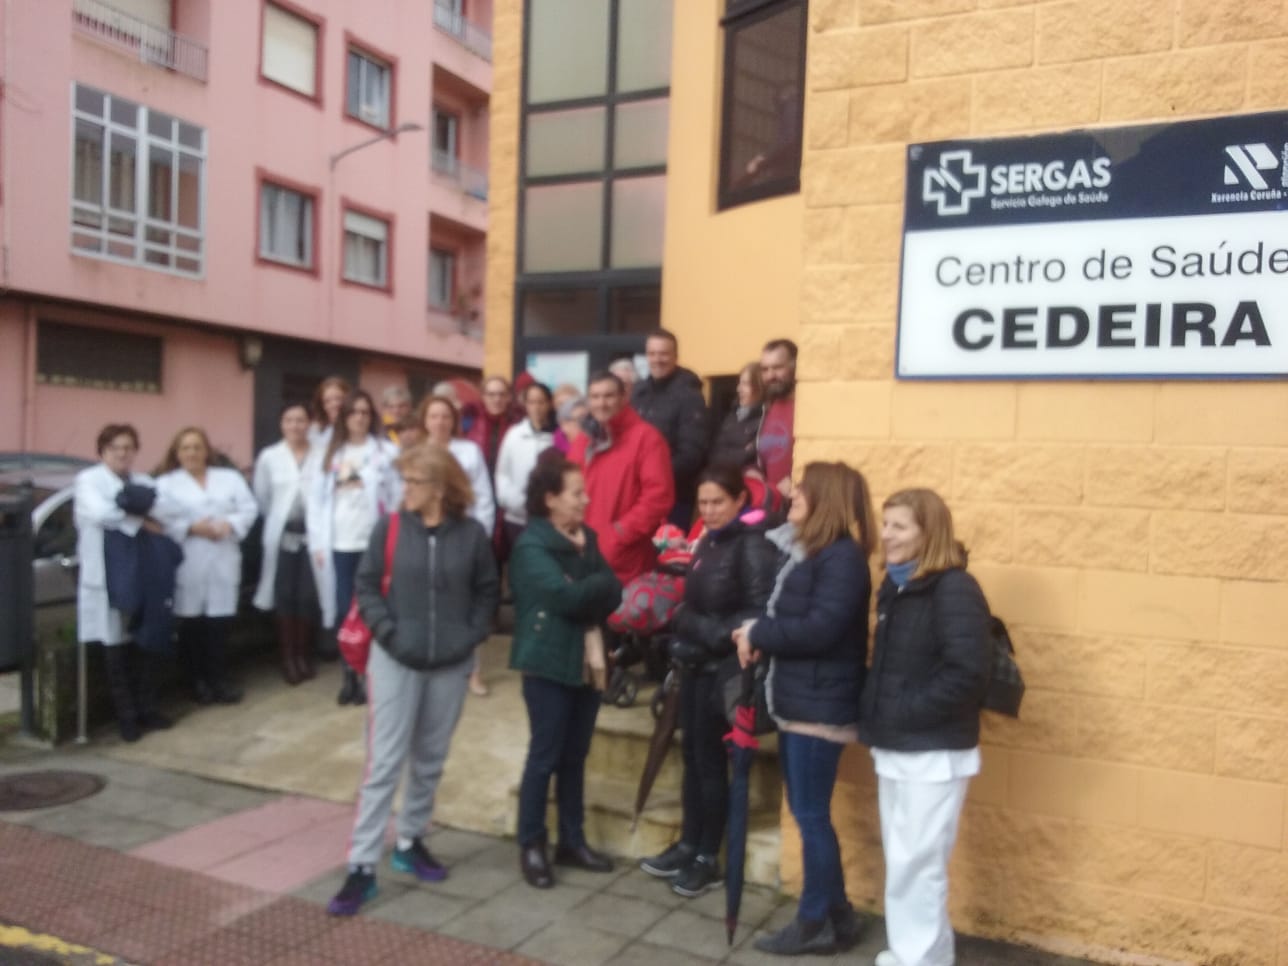 Concentracións semanais no centro de saúde de Cedeira para denunciar o desmantelamento da sanidade pública